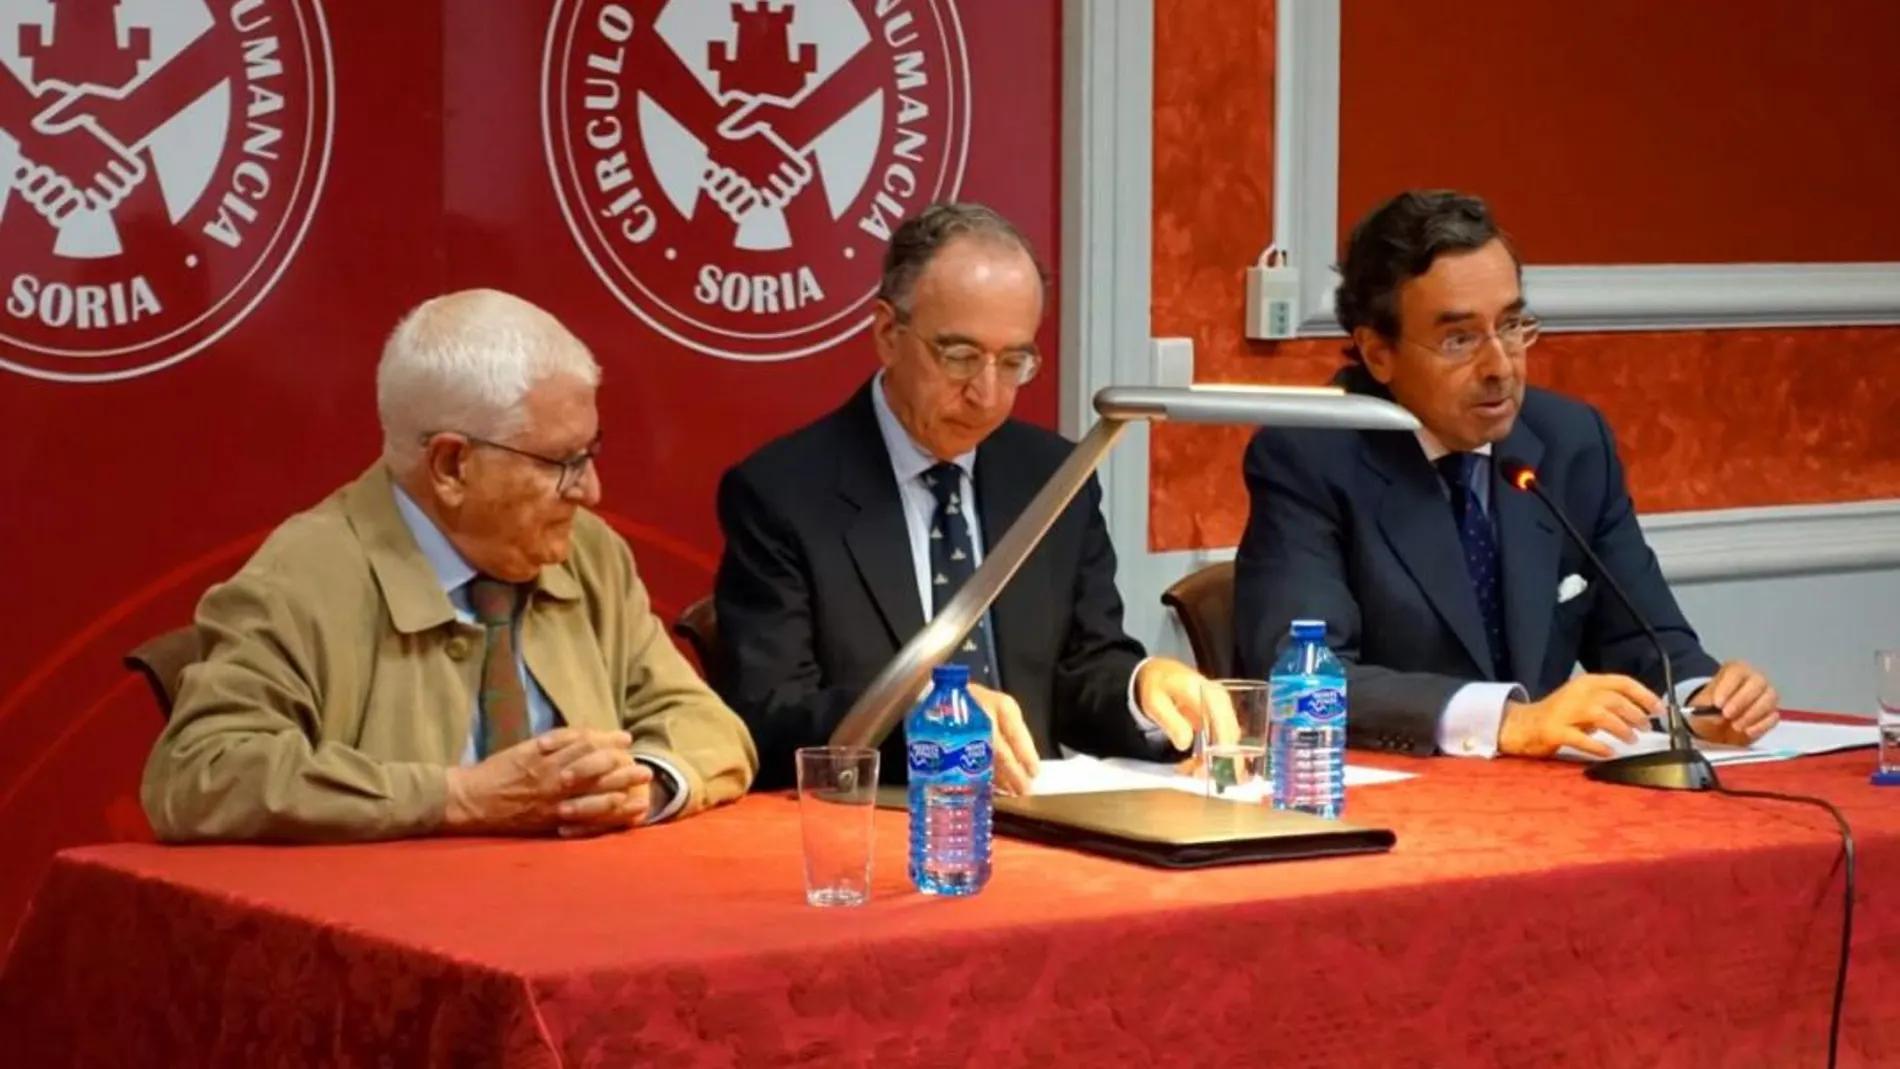 Juan Ignacio Tello Bellosillo imparte la conferencia junto al conde de Ripalda, Amalio de Marichalar, y el doctor Juan Manuel Ruiz Liso.